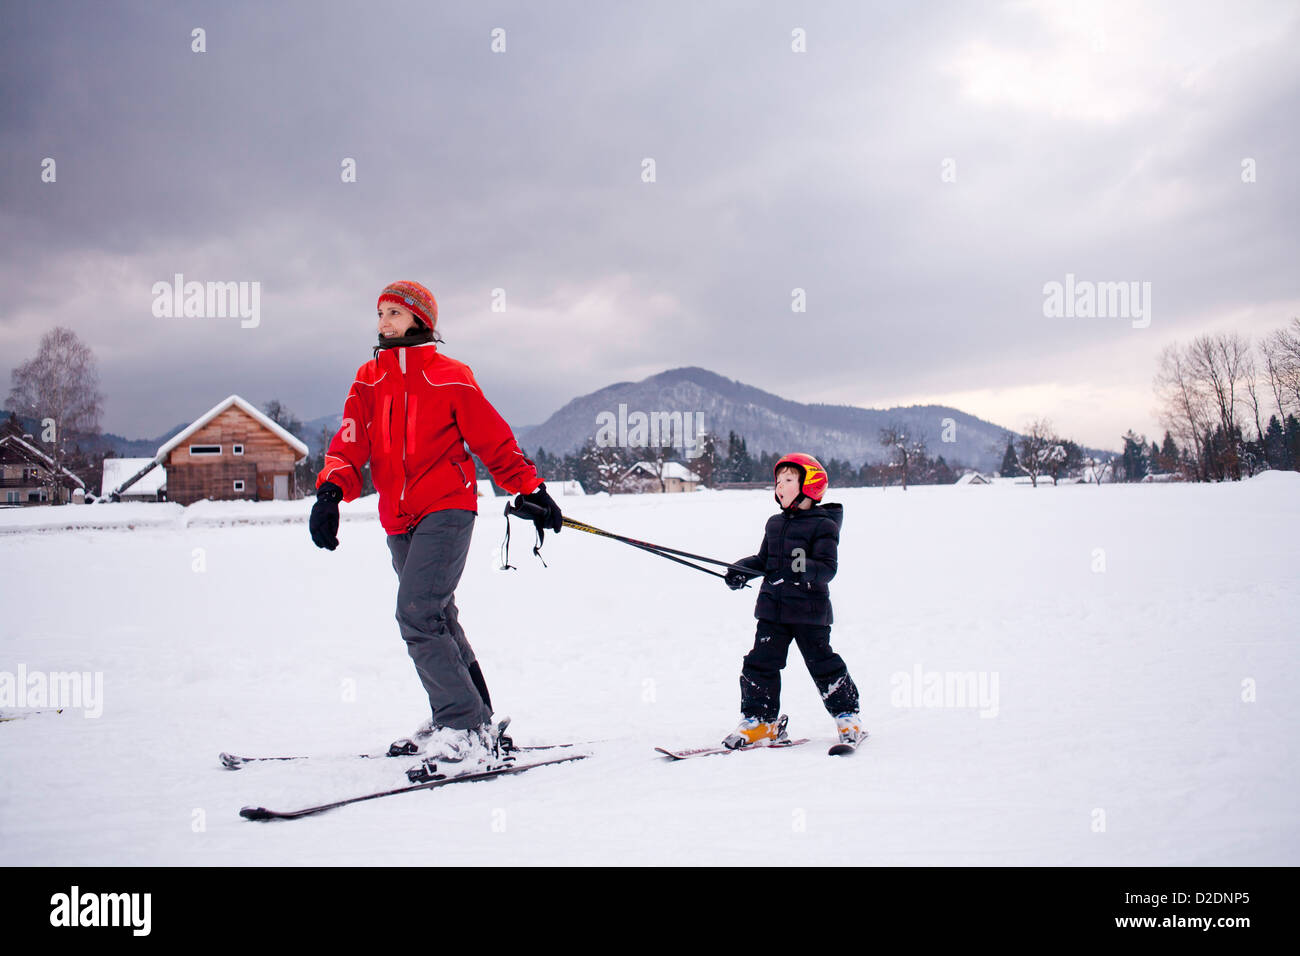 Ski lesson - family on snow. Slovenia Julian Alps. Stock Photo